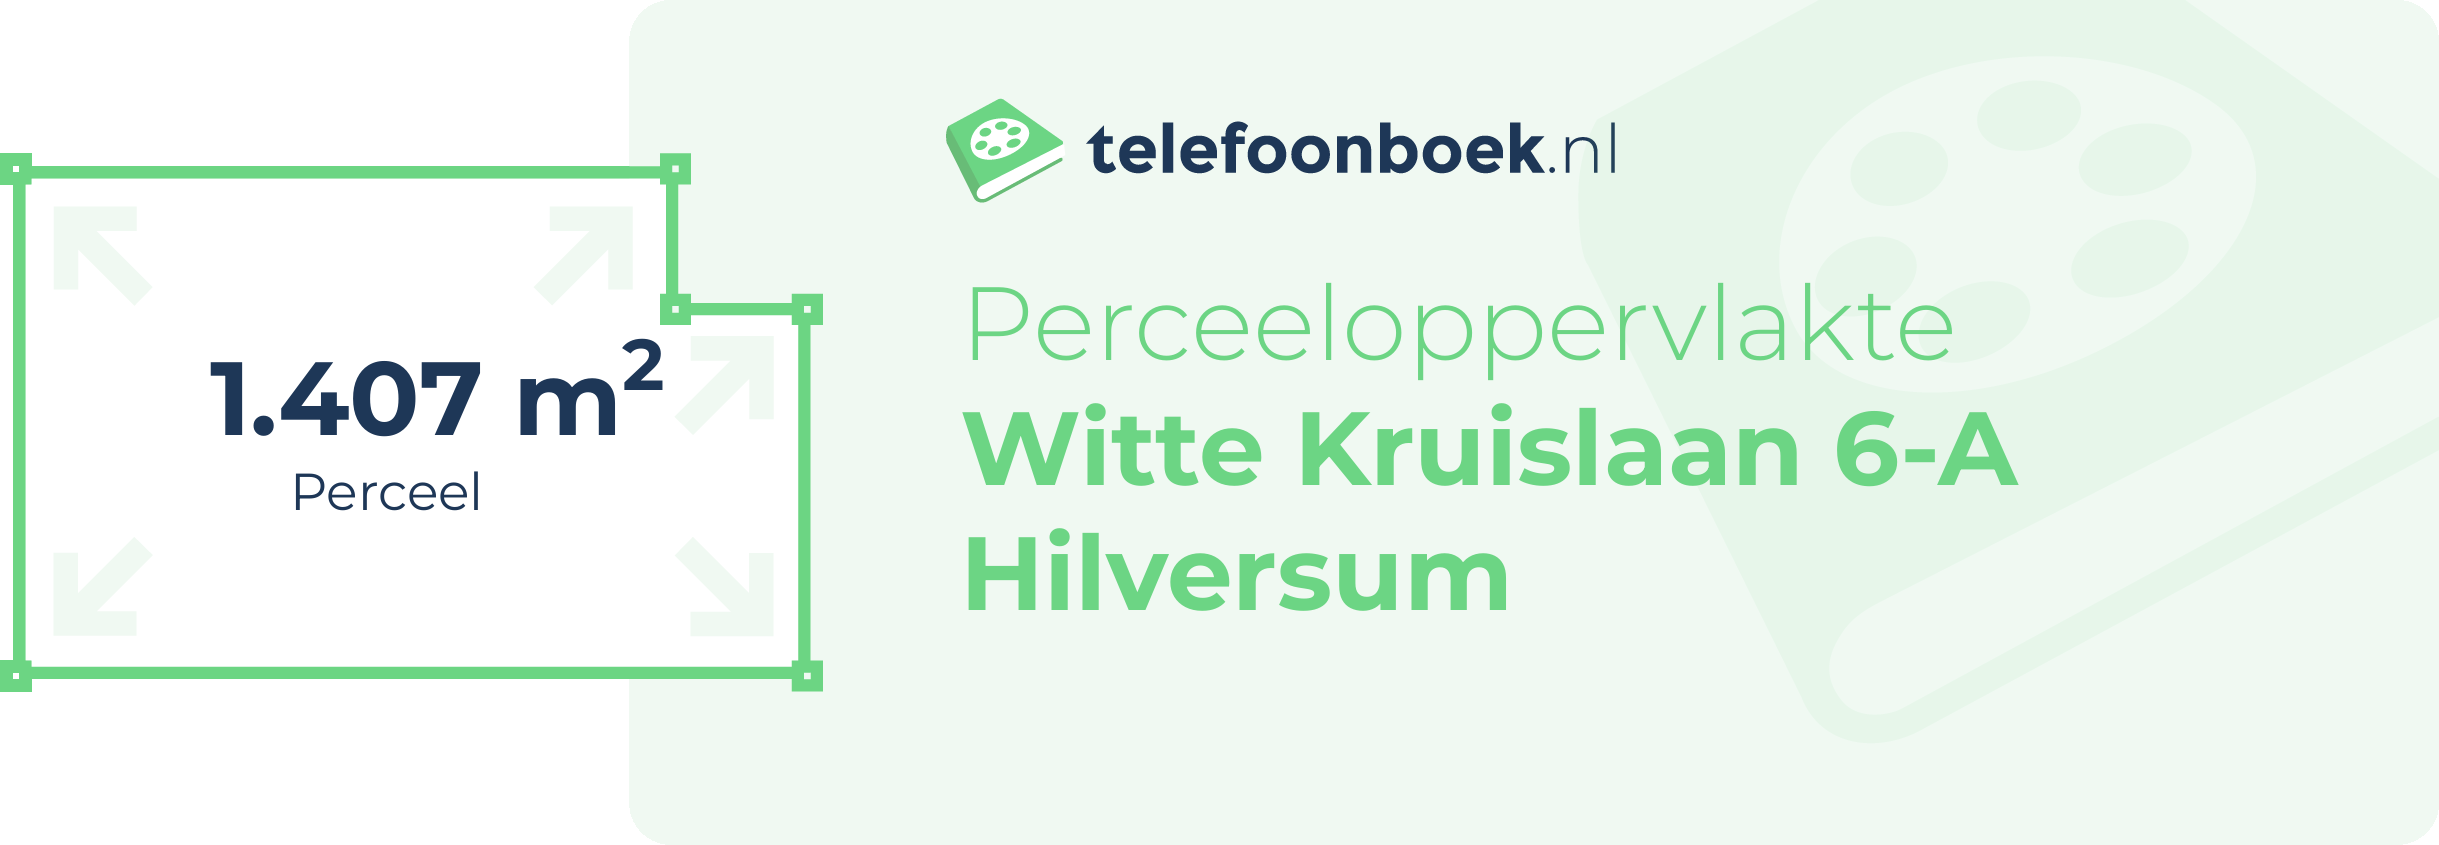 Perceeloppervlakte Witte Kruislaan 6-A Hilversum